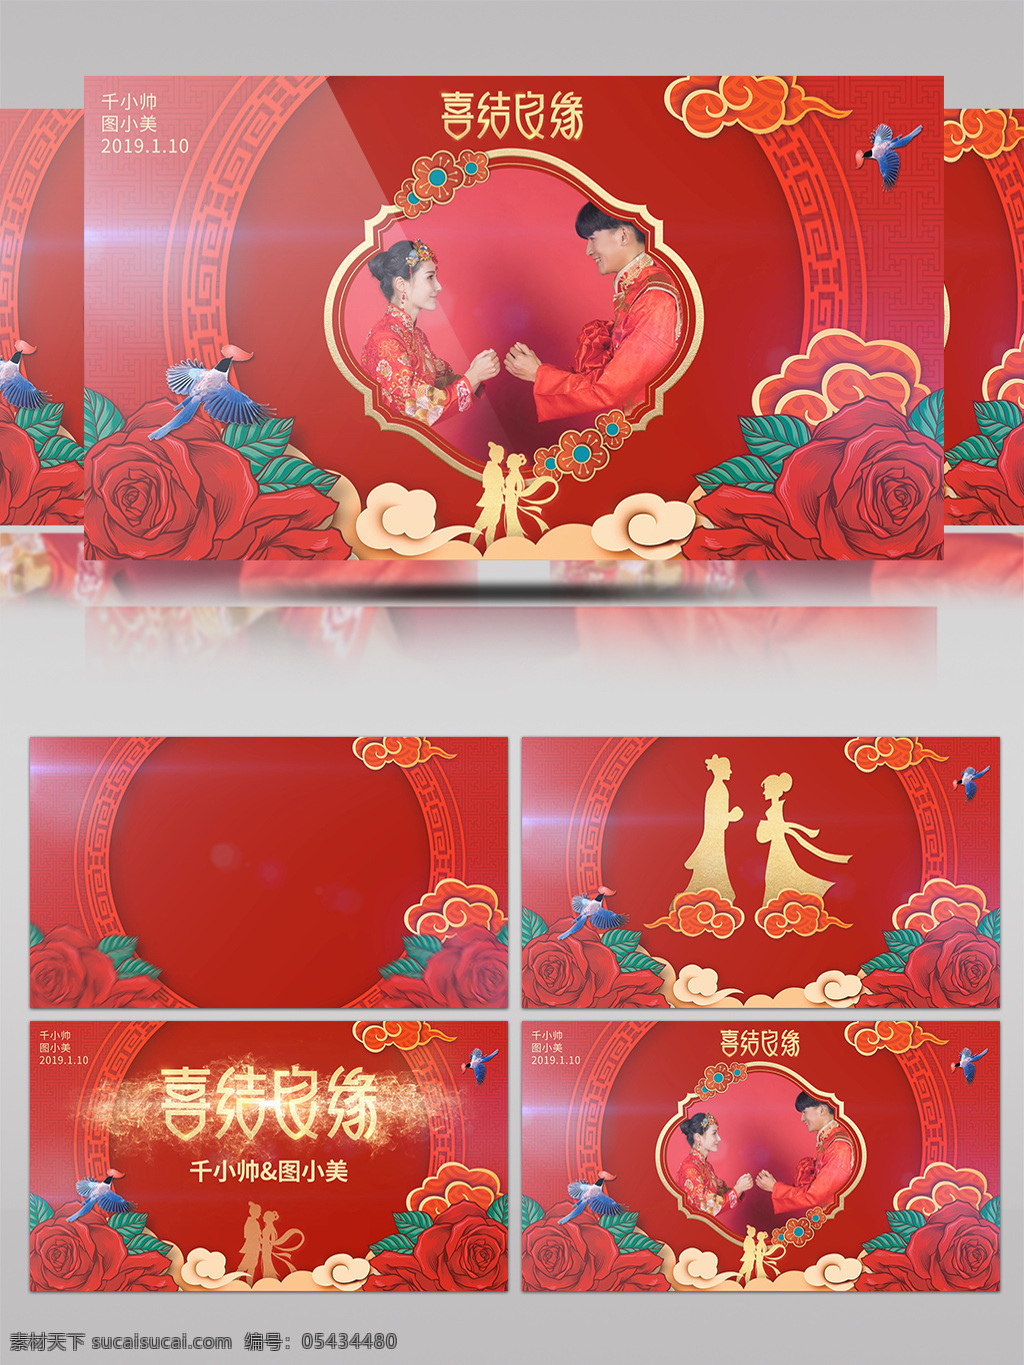 中式 婚礼 展示 相册 ae 模板 喜庆 红色 结婚 中式婚礼 喜鹊 喜结良缘 宣传 爱情 浪漫 牛郎织女 典礼 结婚典礼